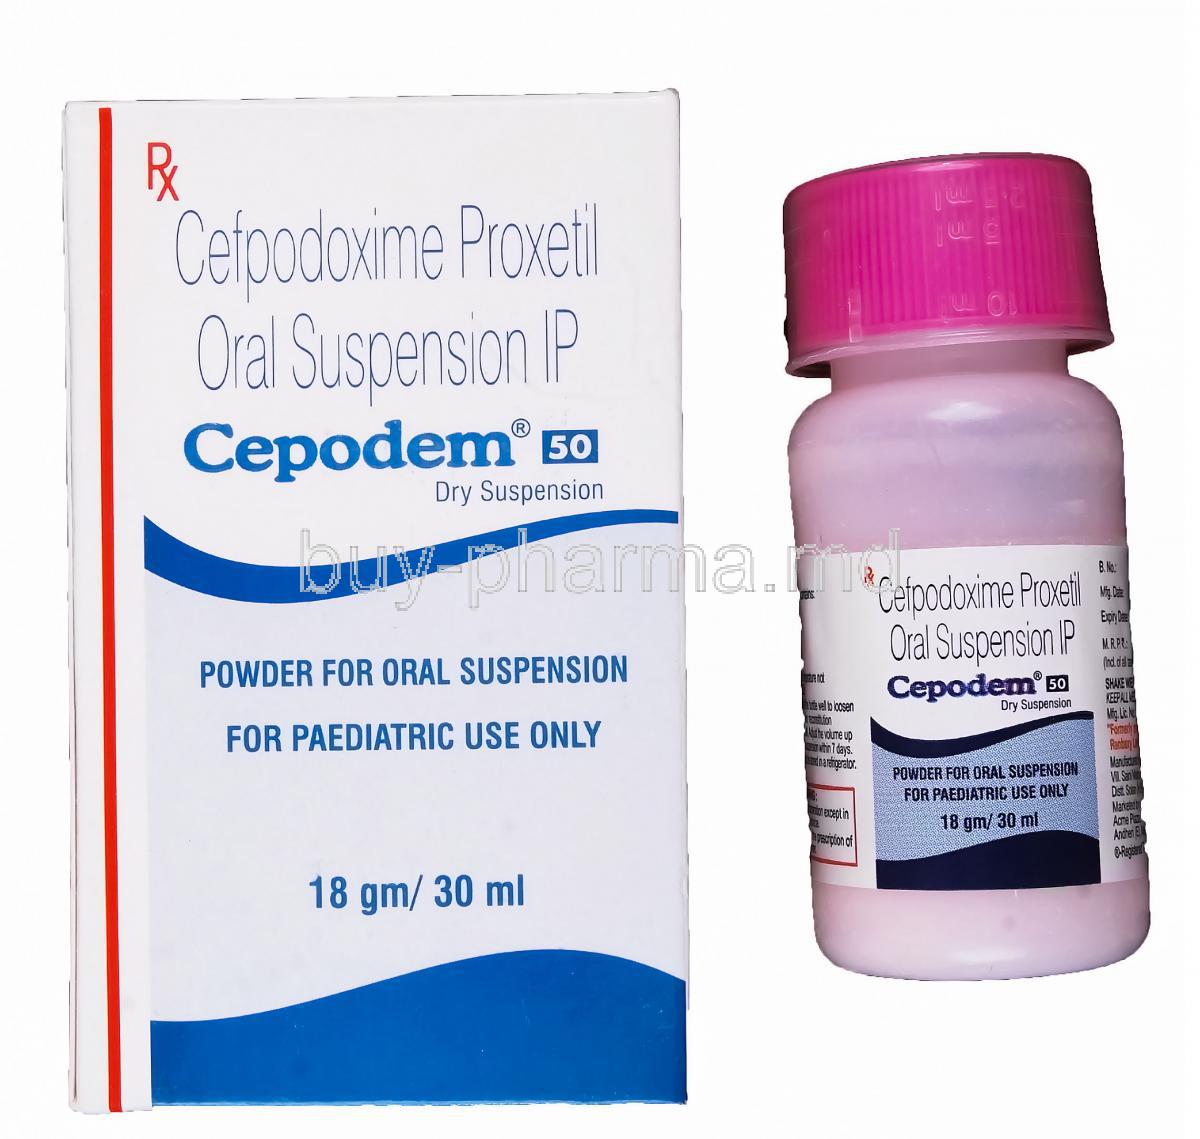 Cepodem-DT, Generic Vantin, Cefpodoxime 18gm/ 30ml 30ml Oral Suspension